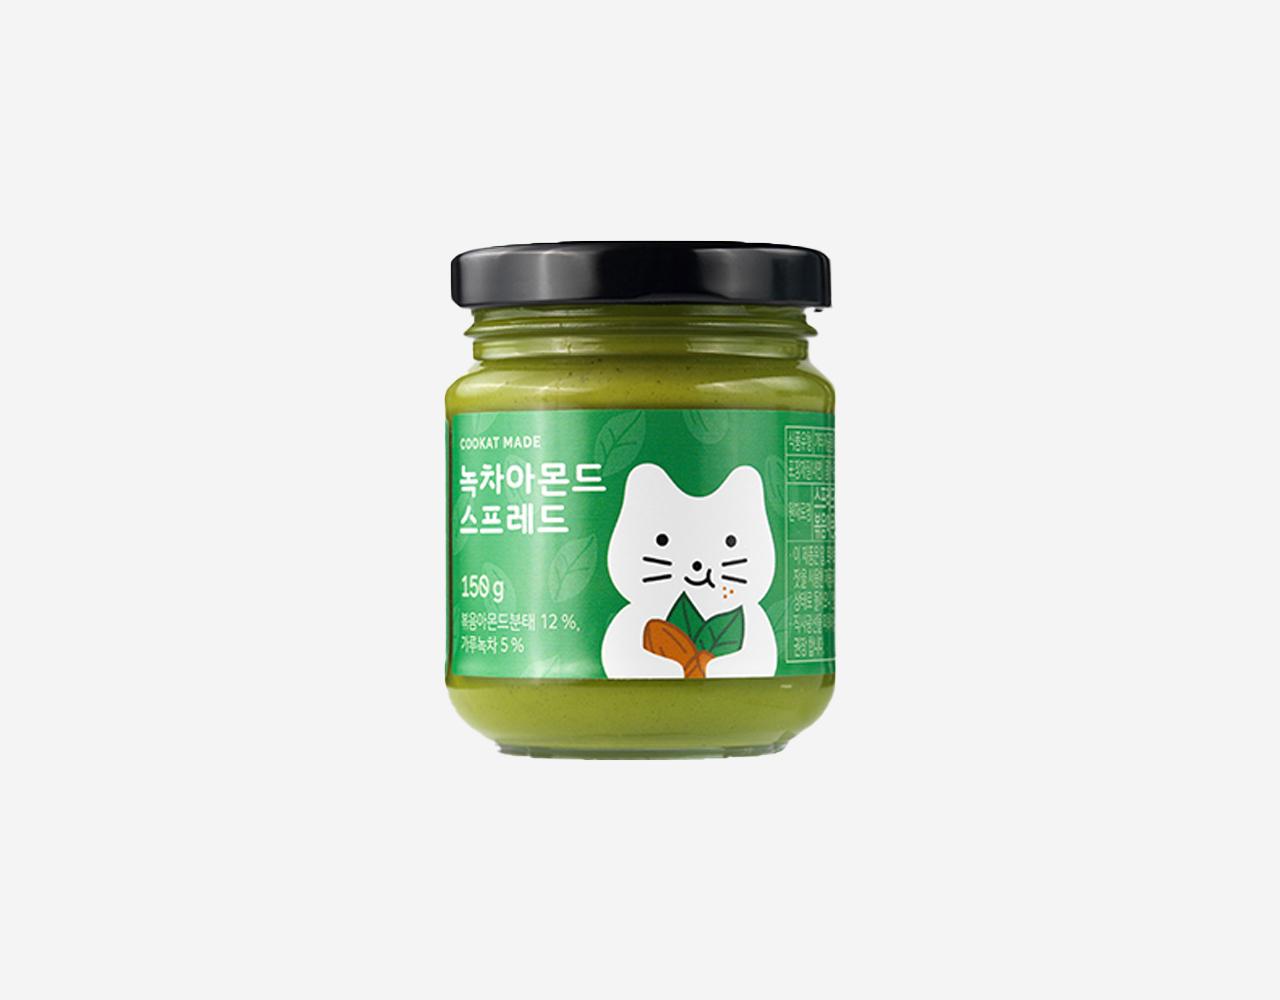 韓国人気スプレッド 抹茶アーモンド味(150g)